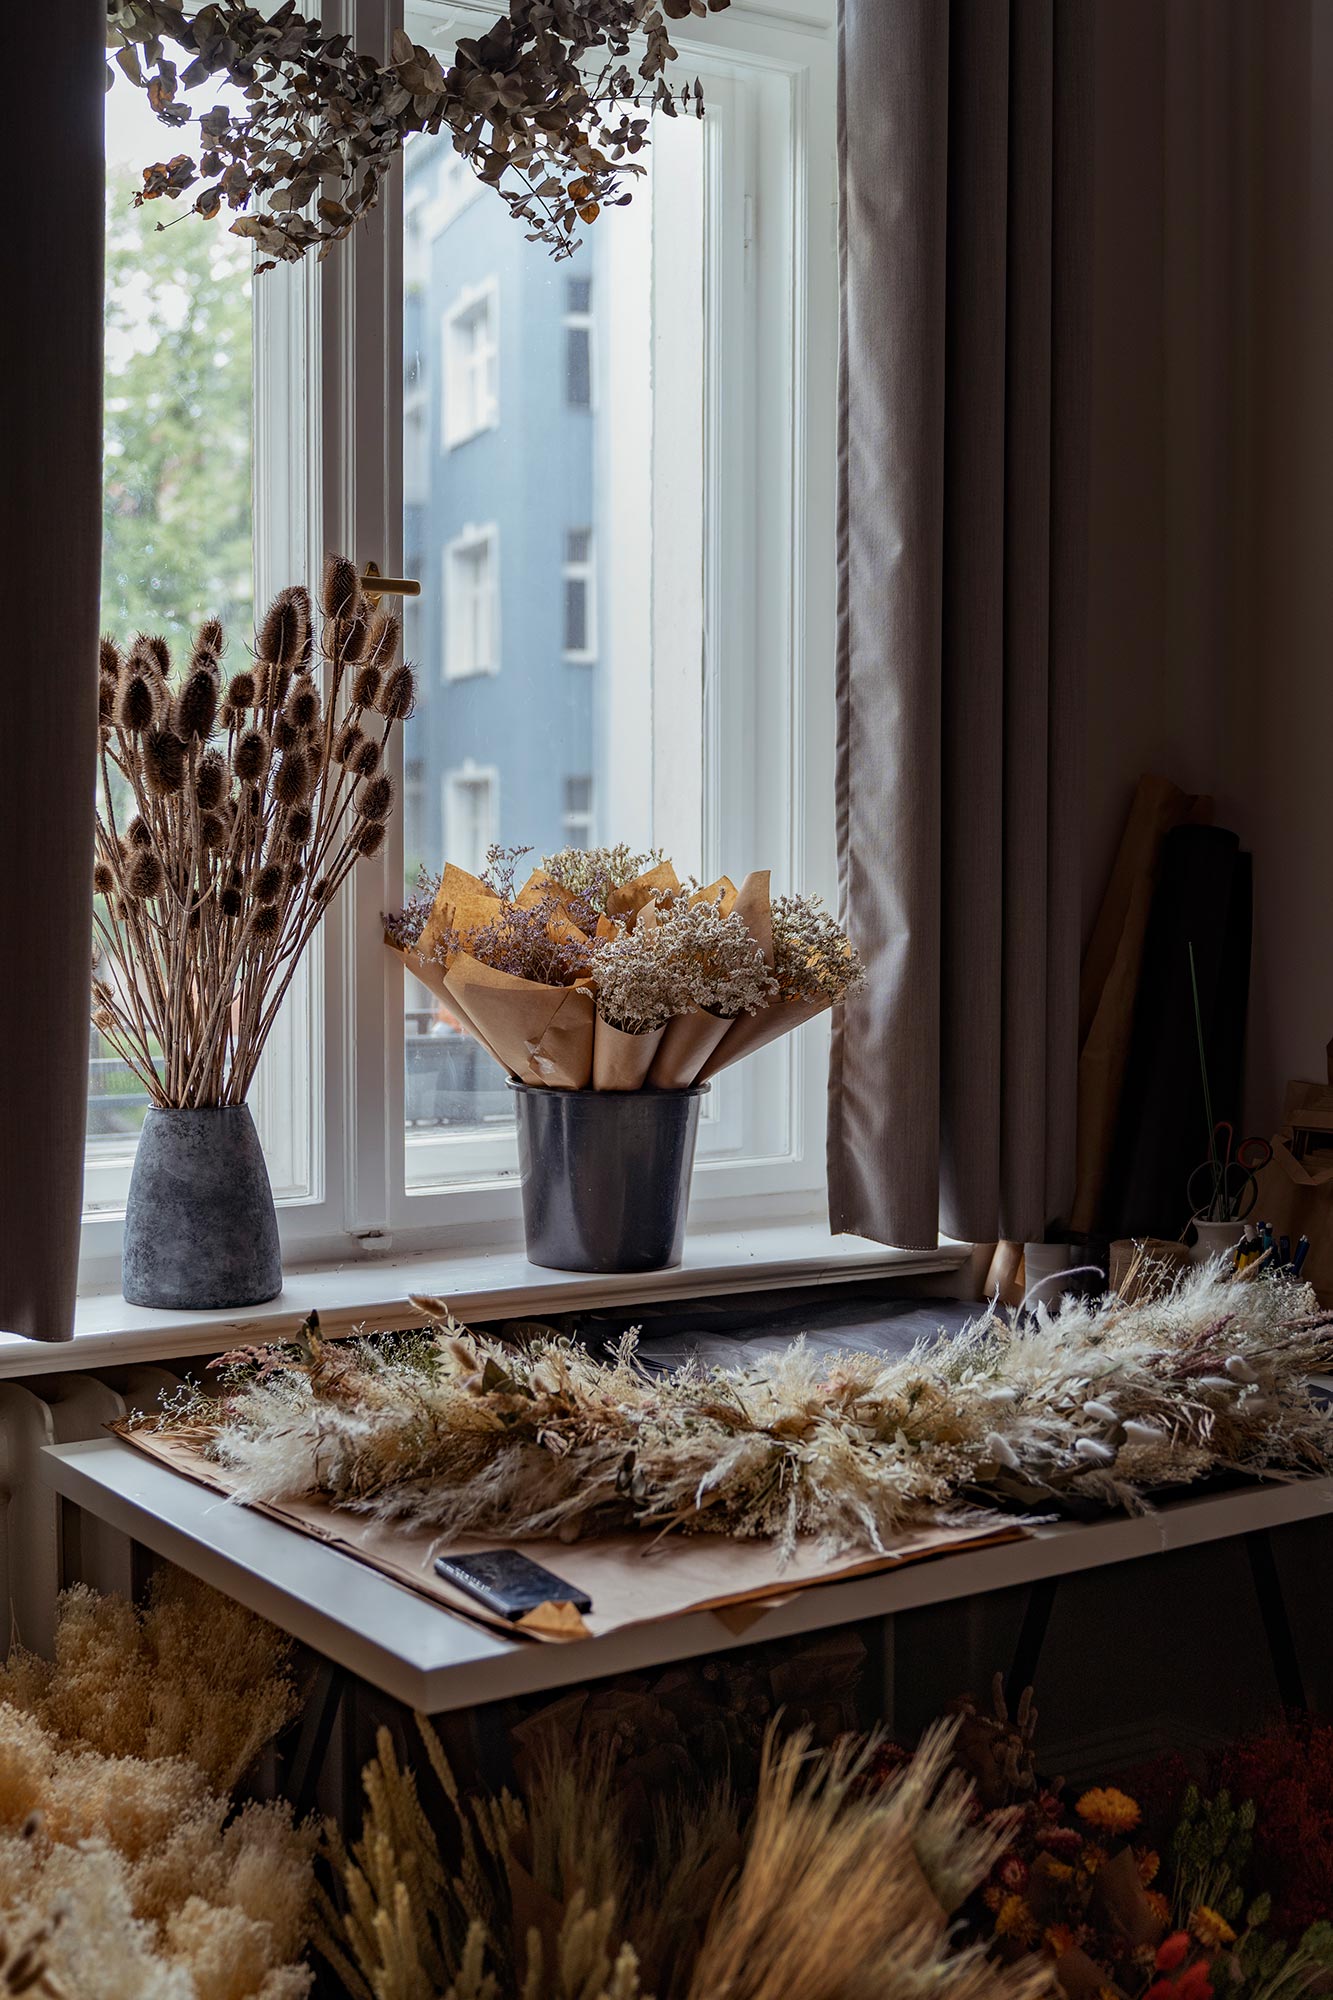 Blossom dried flower studio in Berlin